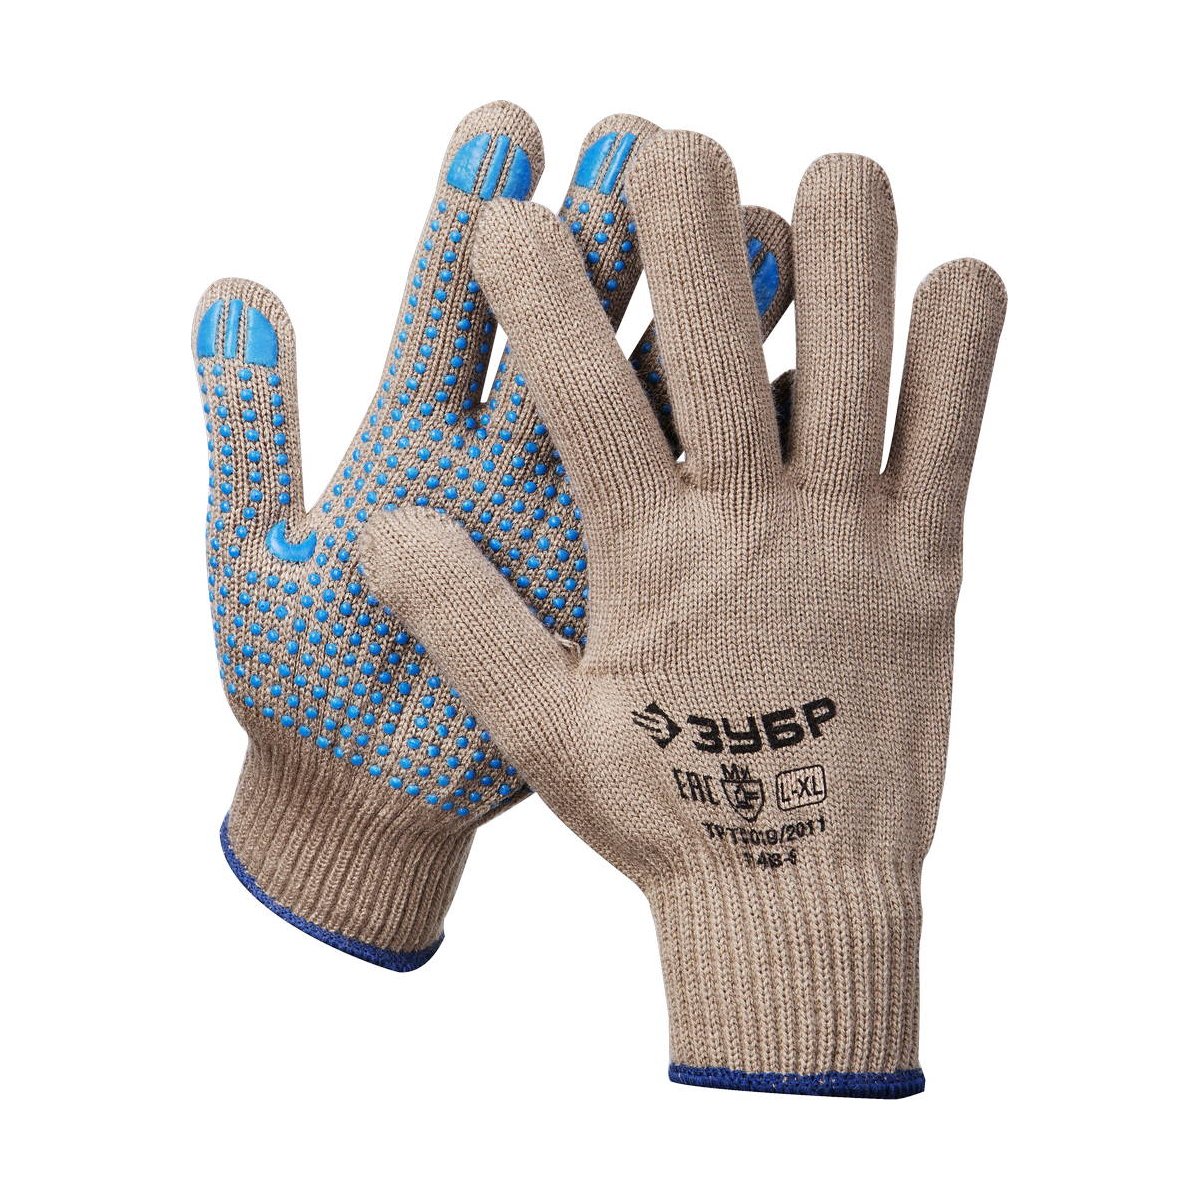 Акриловые перчатки ЗУБР Енисей р. L-XL утепленные с ПВХ покрытием (точка) (11463-XL)Купить